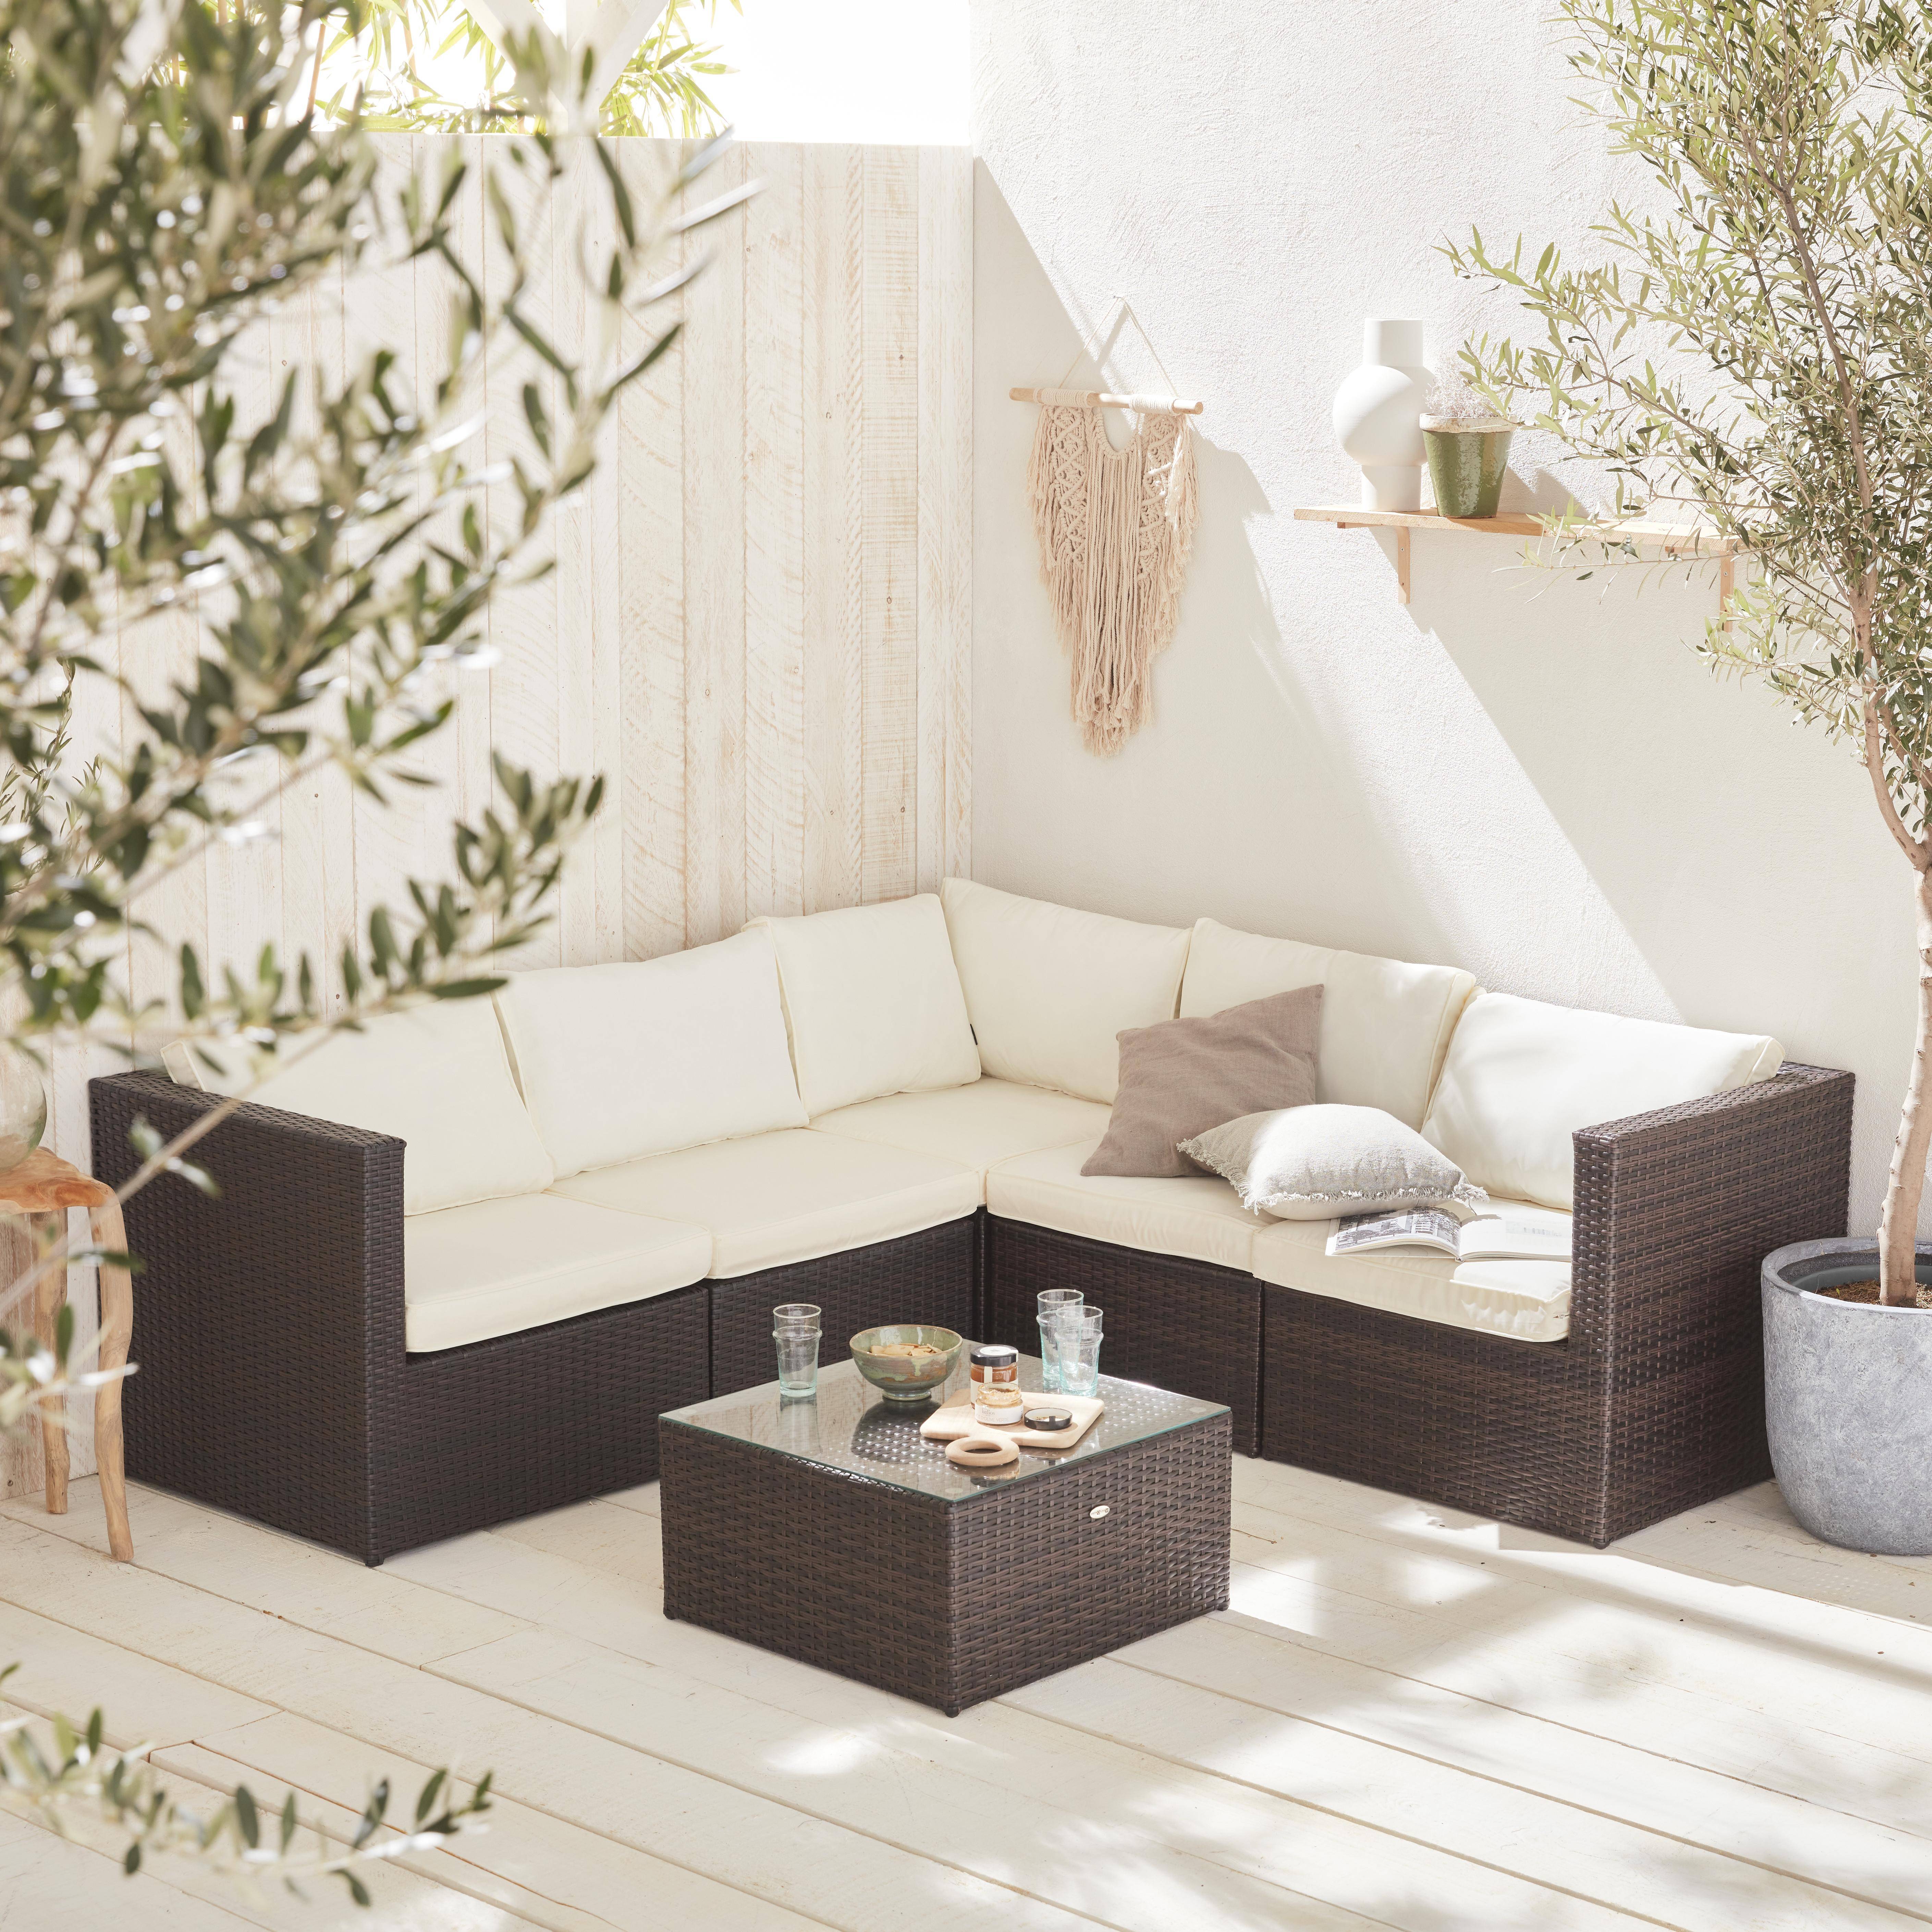 Conjunto de jardín, conjunto sofá de exterior, Marrón Crudo, 5 plazas, Dimensiones y Cojines Confortable - Siena Photo1